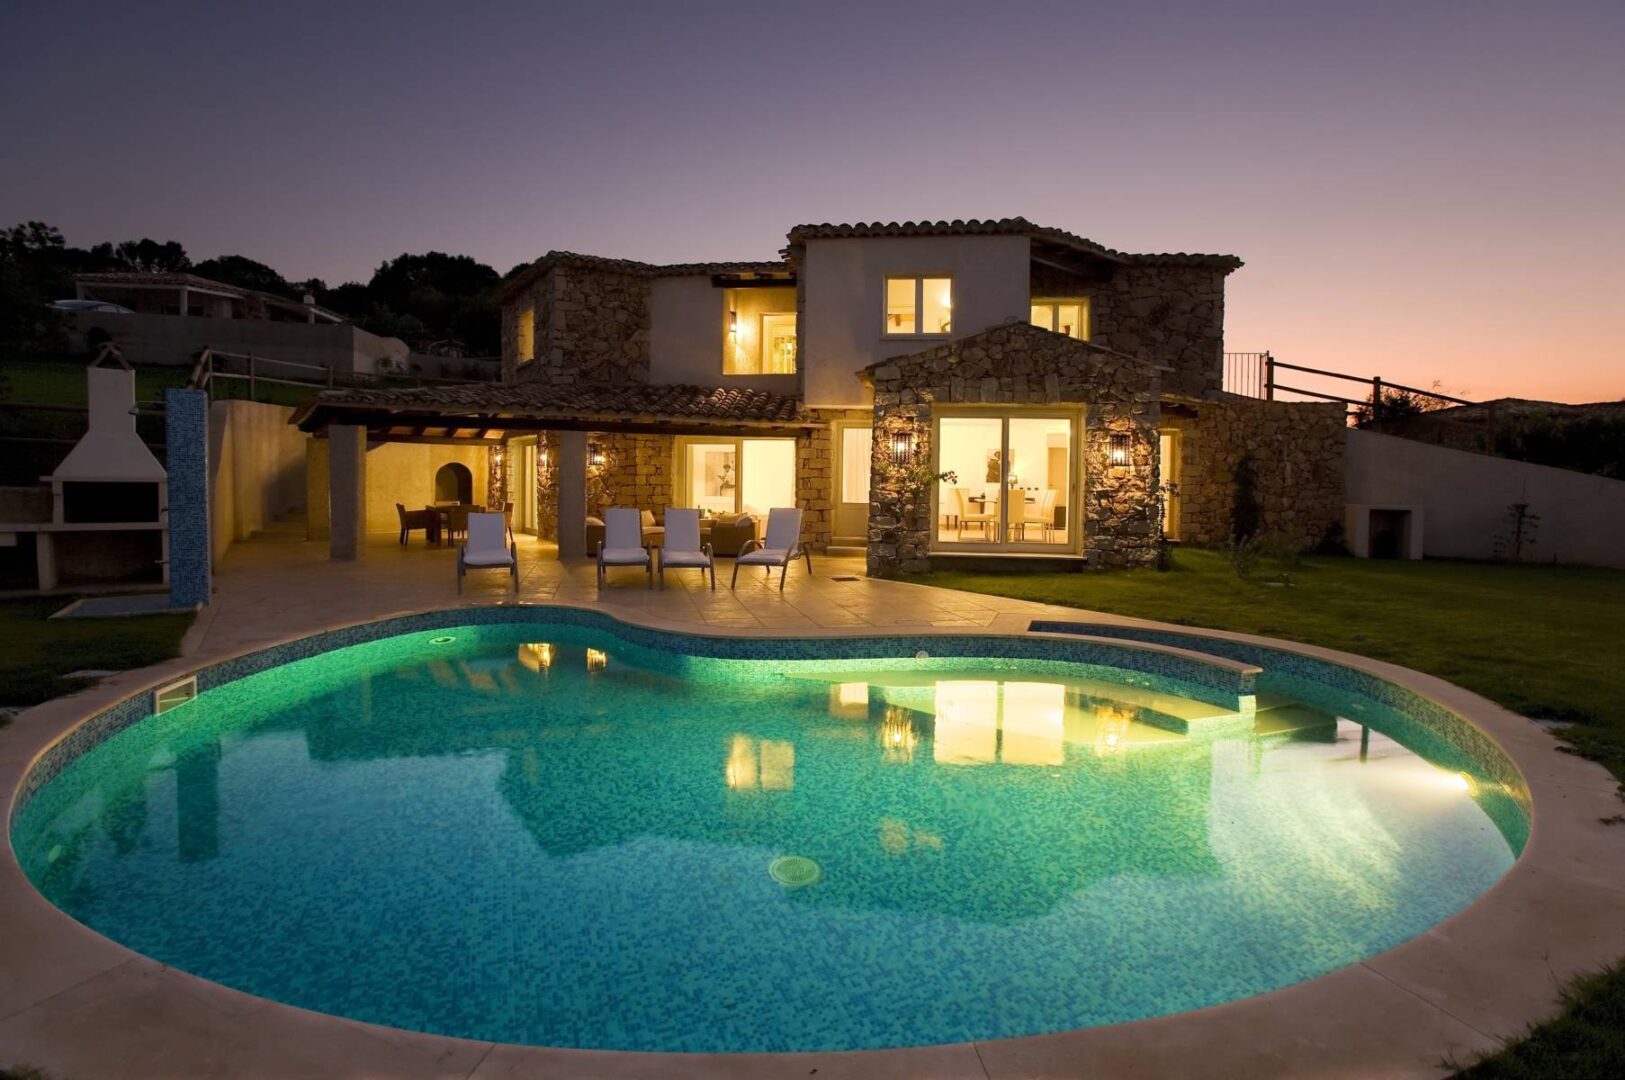 Ville in Sardegna, resort con piscina